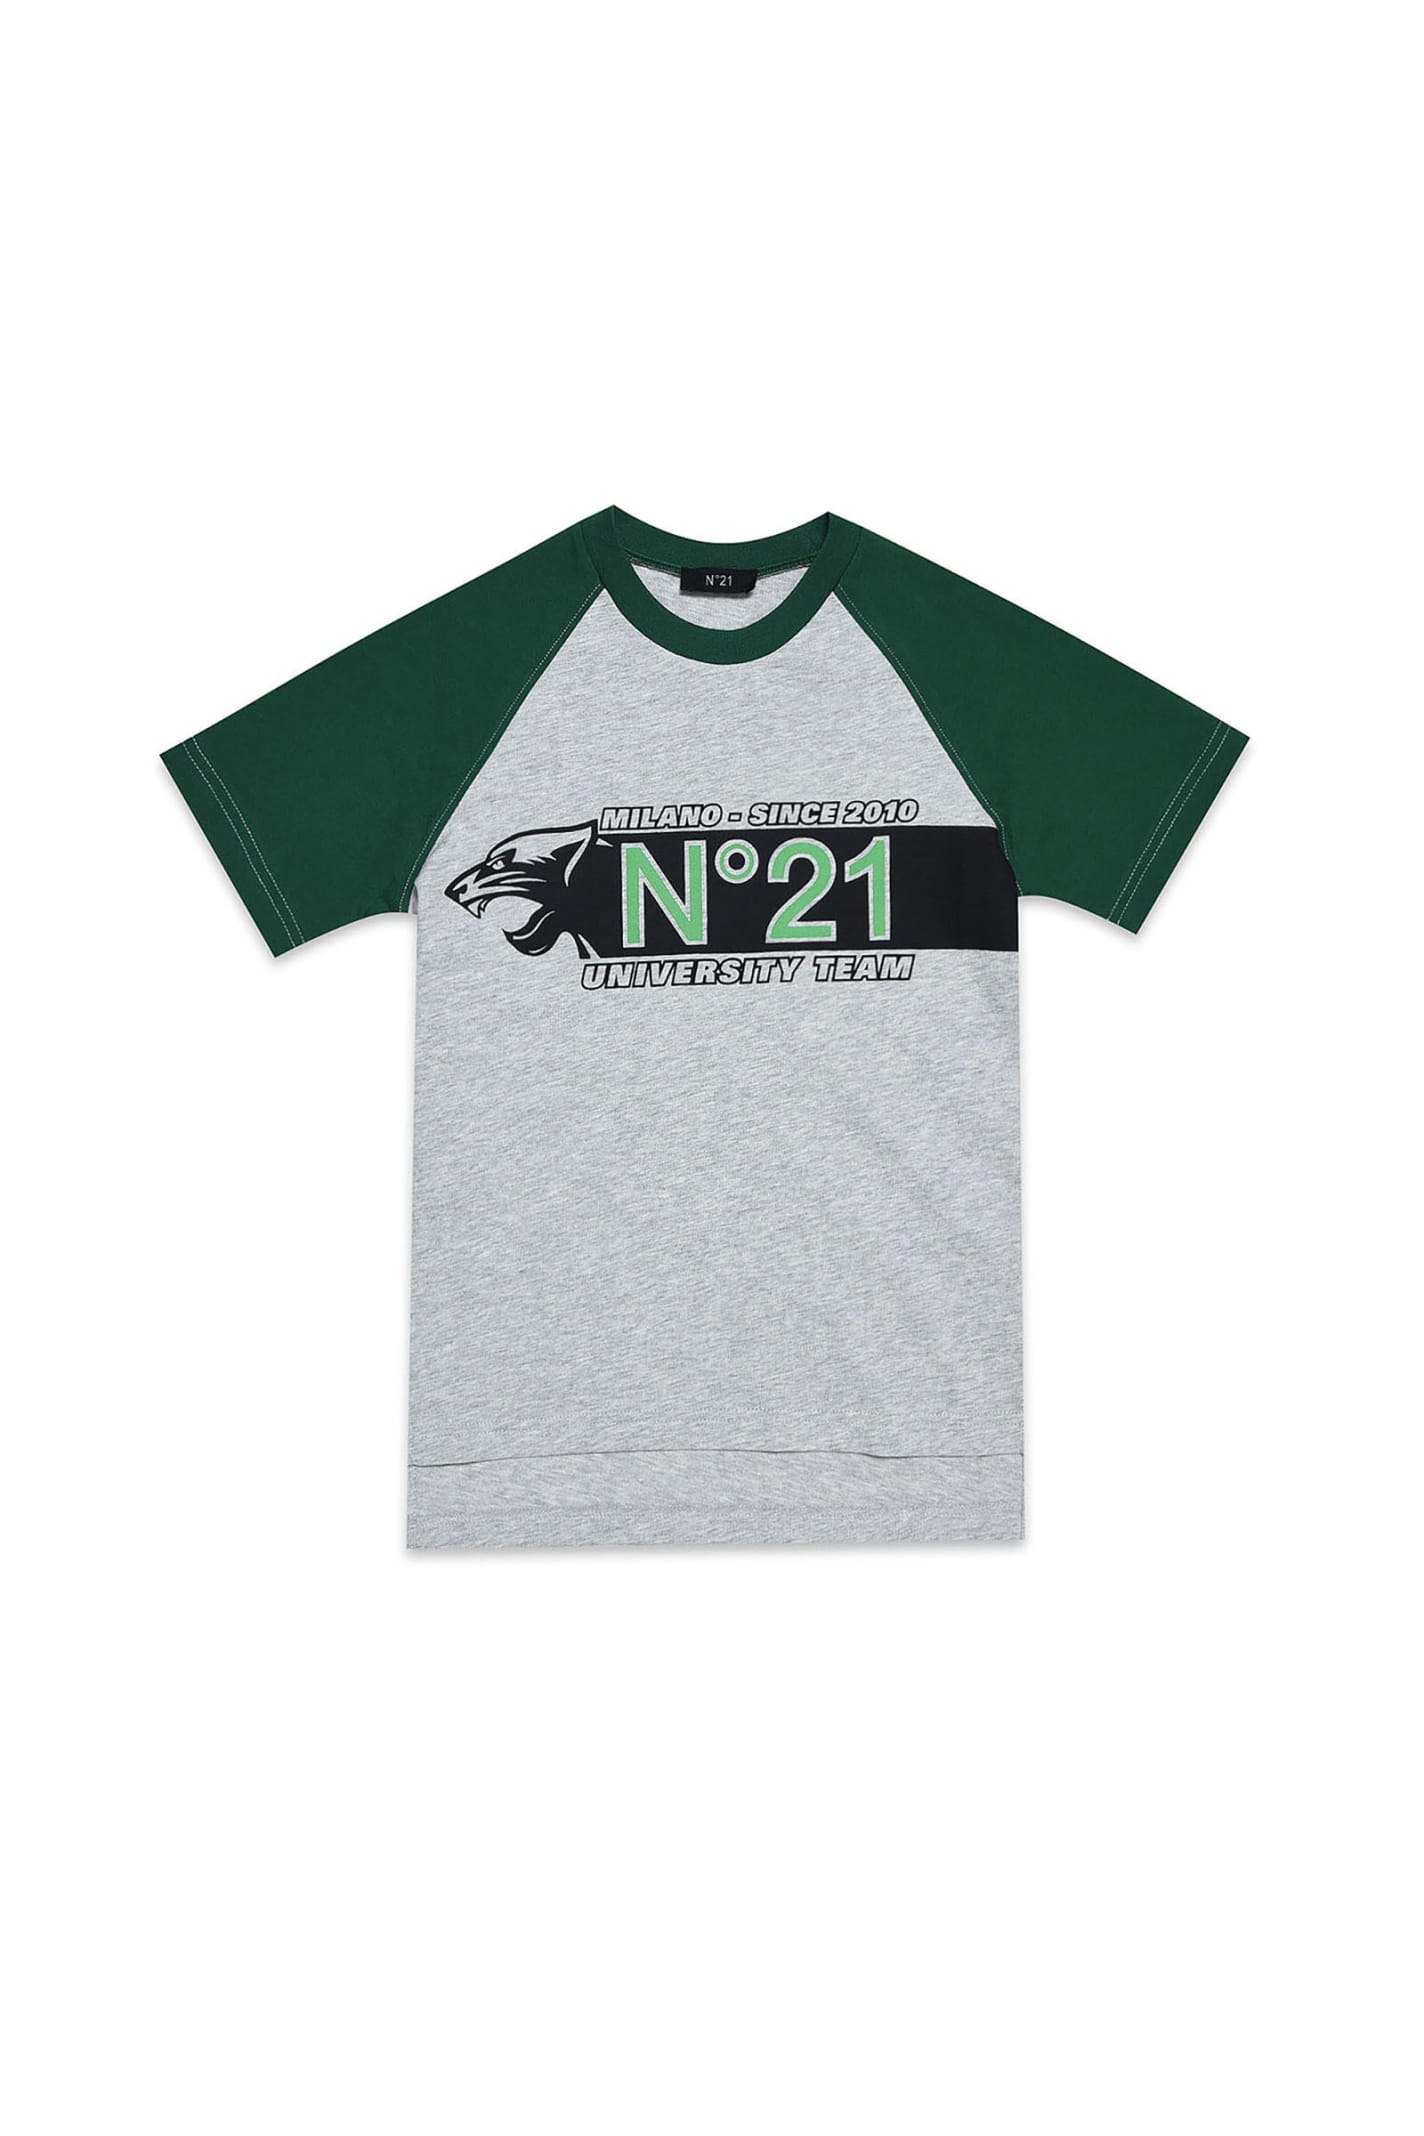 N.21 N21t141m T-shirt N°21